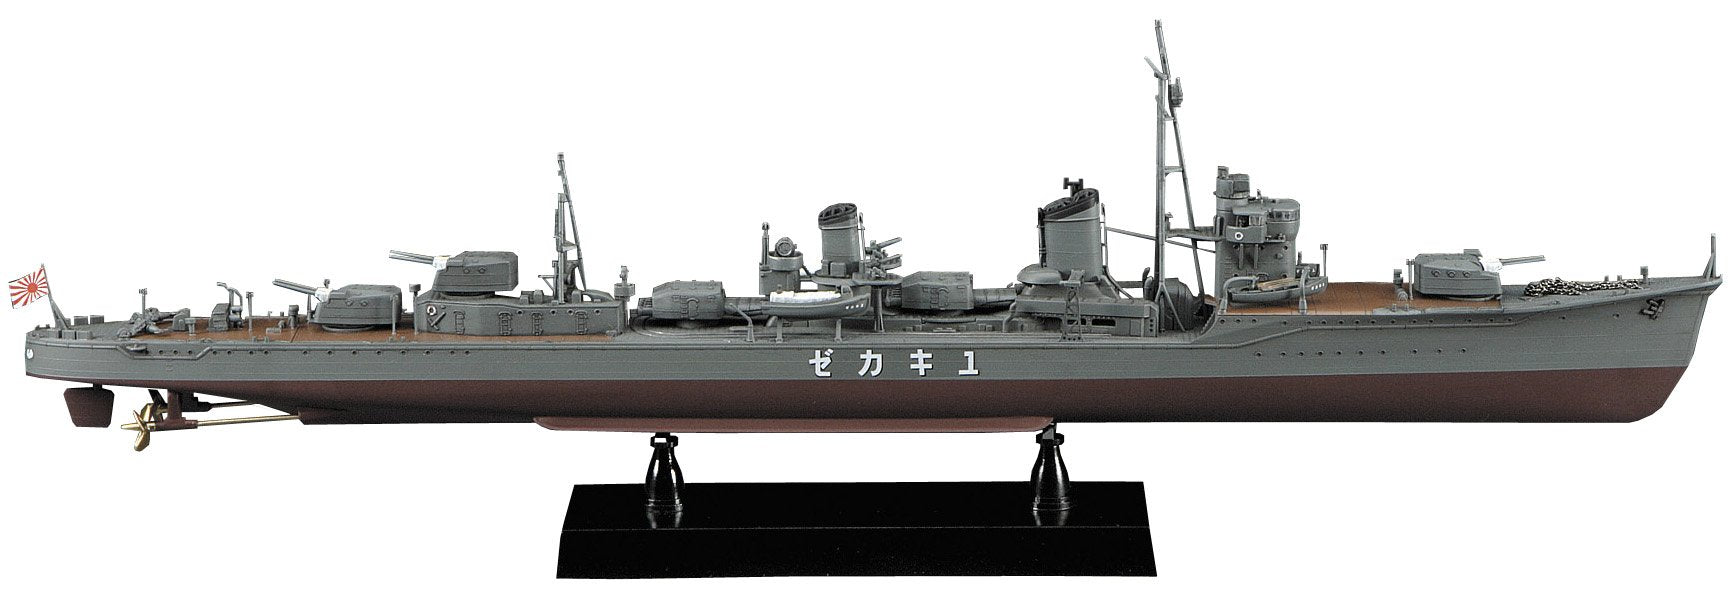 Hasegawa 40063 1/350 Japanische Marine Gepanzerter Zerstörer der japanischen Marine Yukikaze Showa 15 Completion Plastic Model